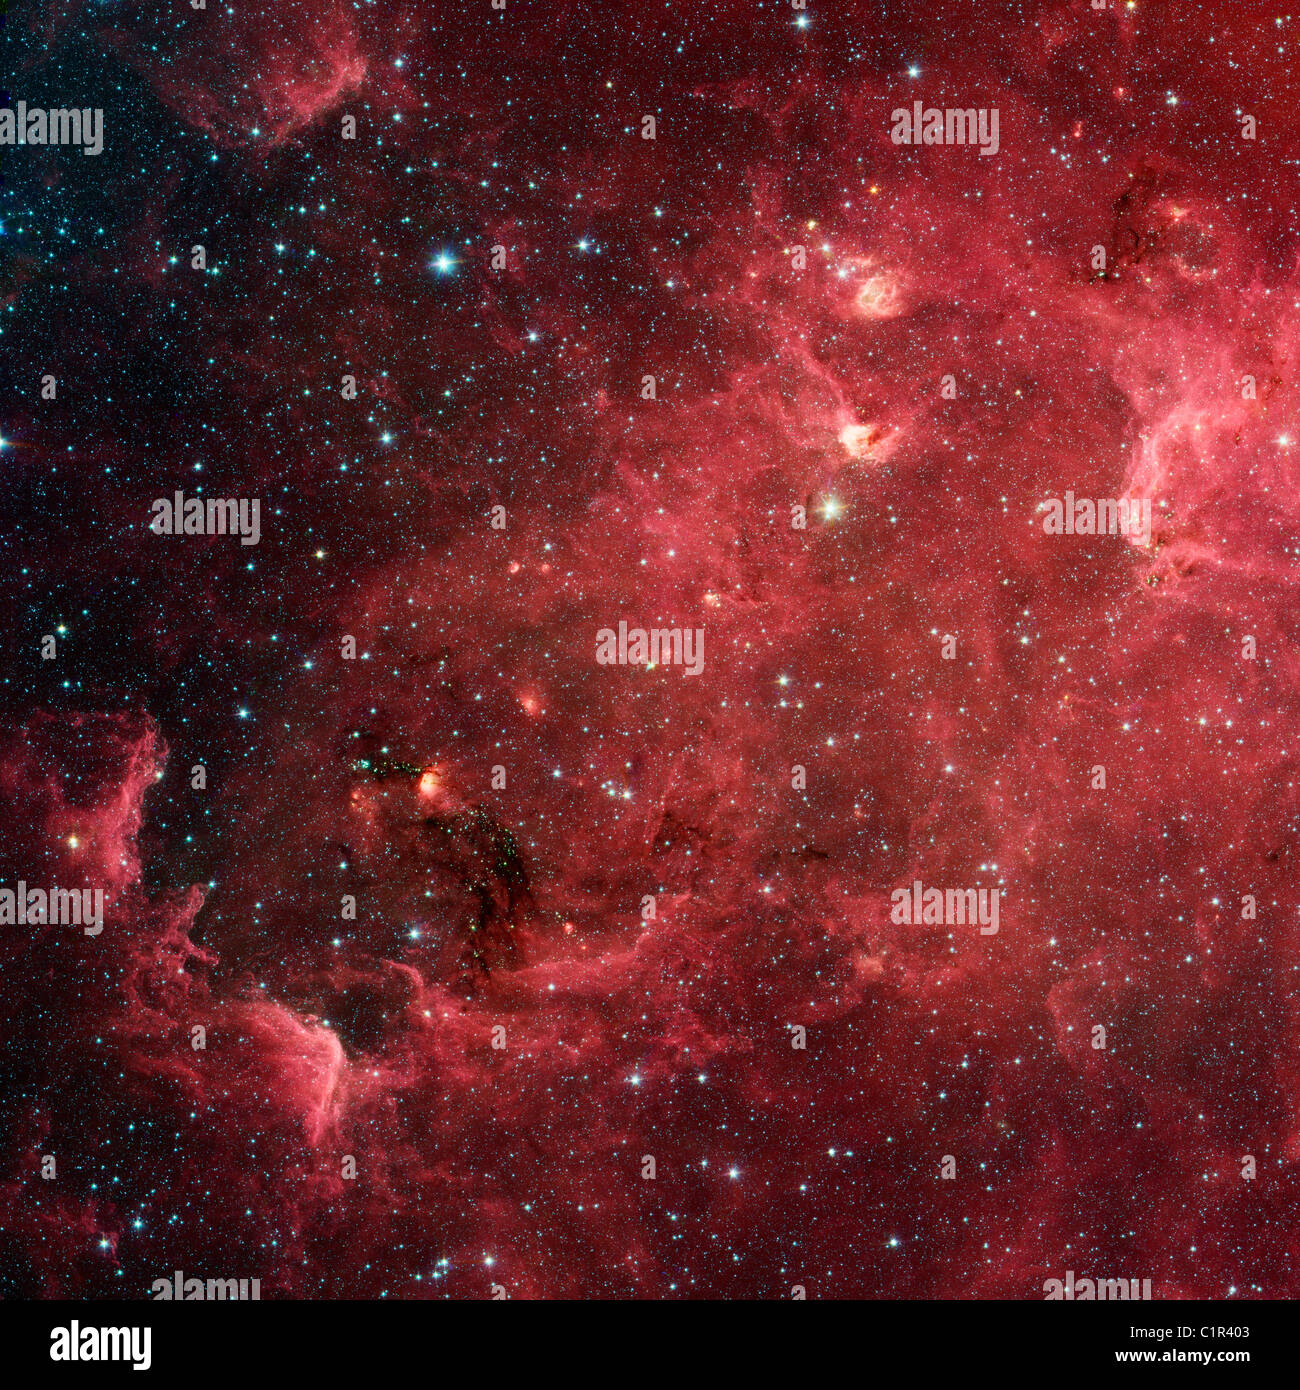 Amérique du Nord l'étoile tourbillonnante. nébuleuse ressemble à l'Amérique du Nord, région de la nouvelle vue dans l'infrarouge du télescope spatial Spitzer de la NASA Banque D'Images